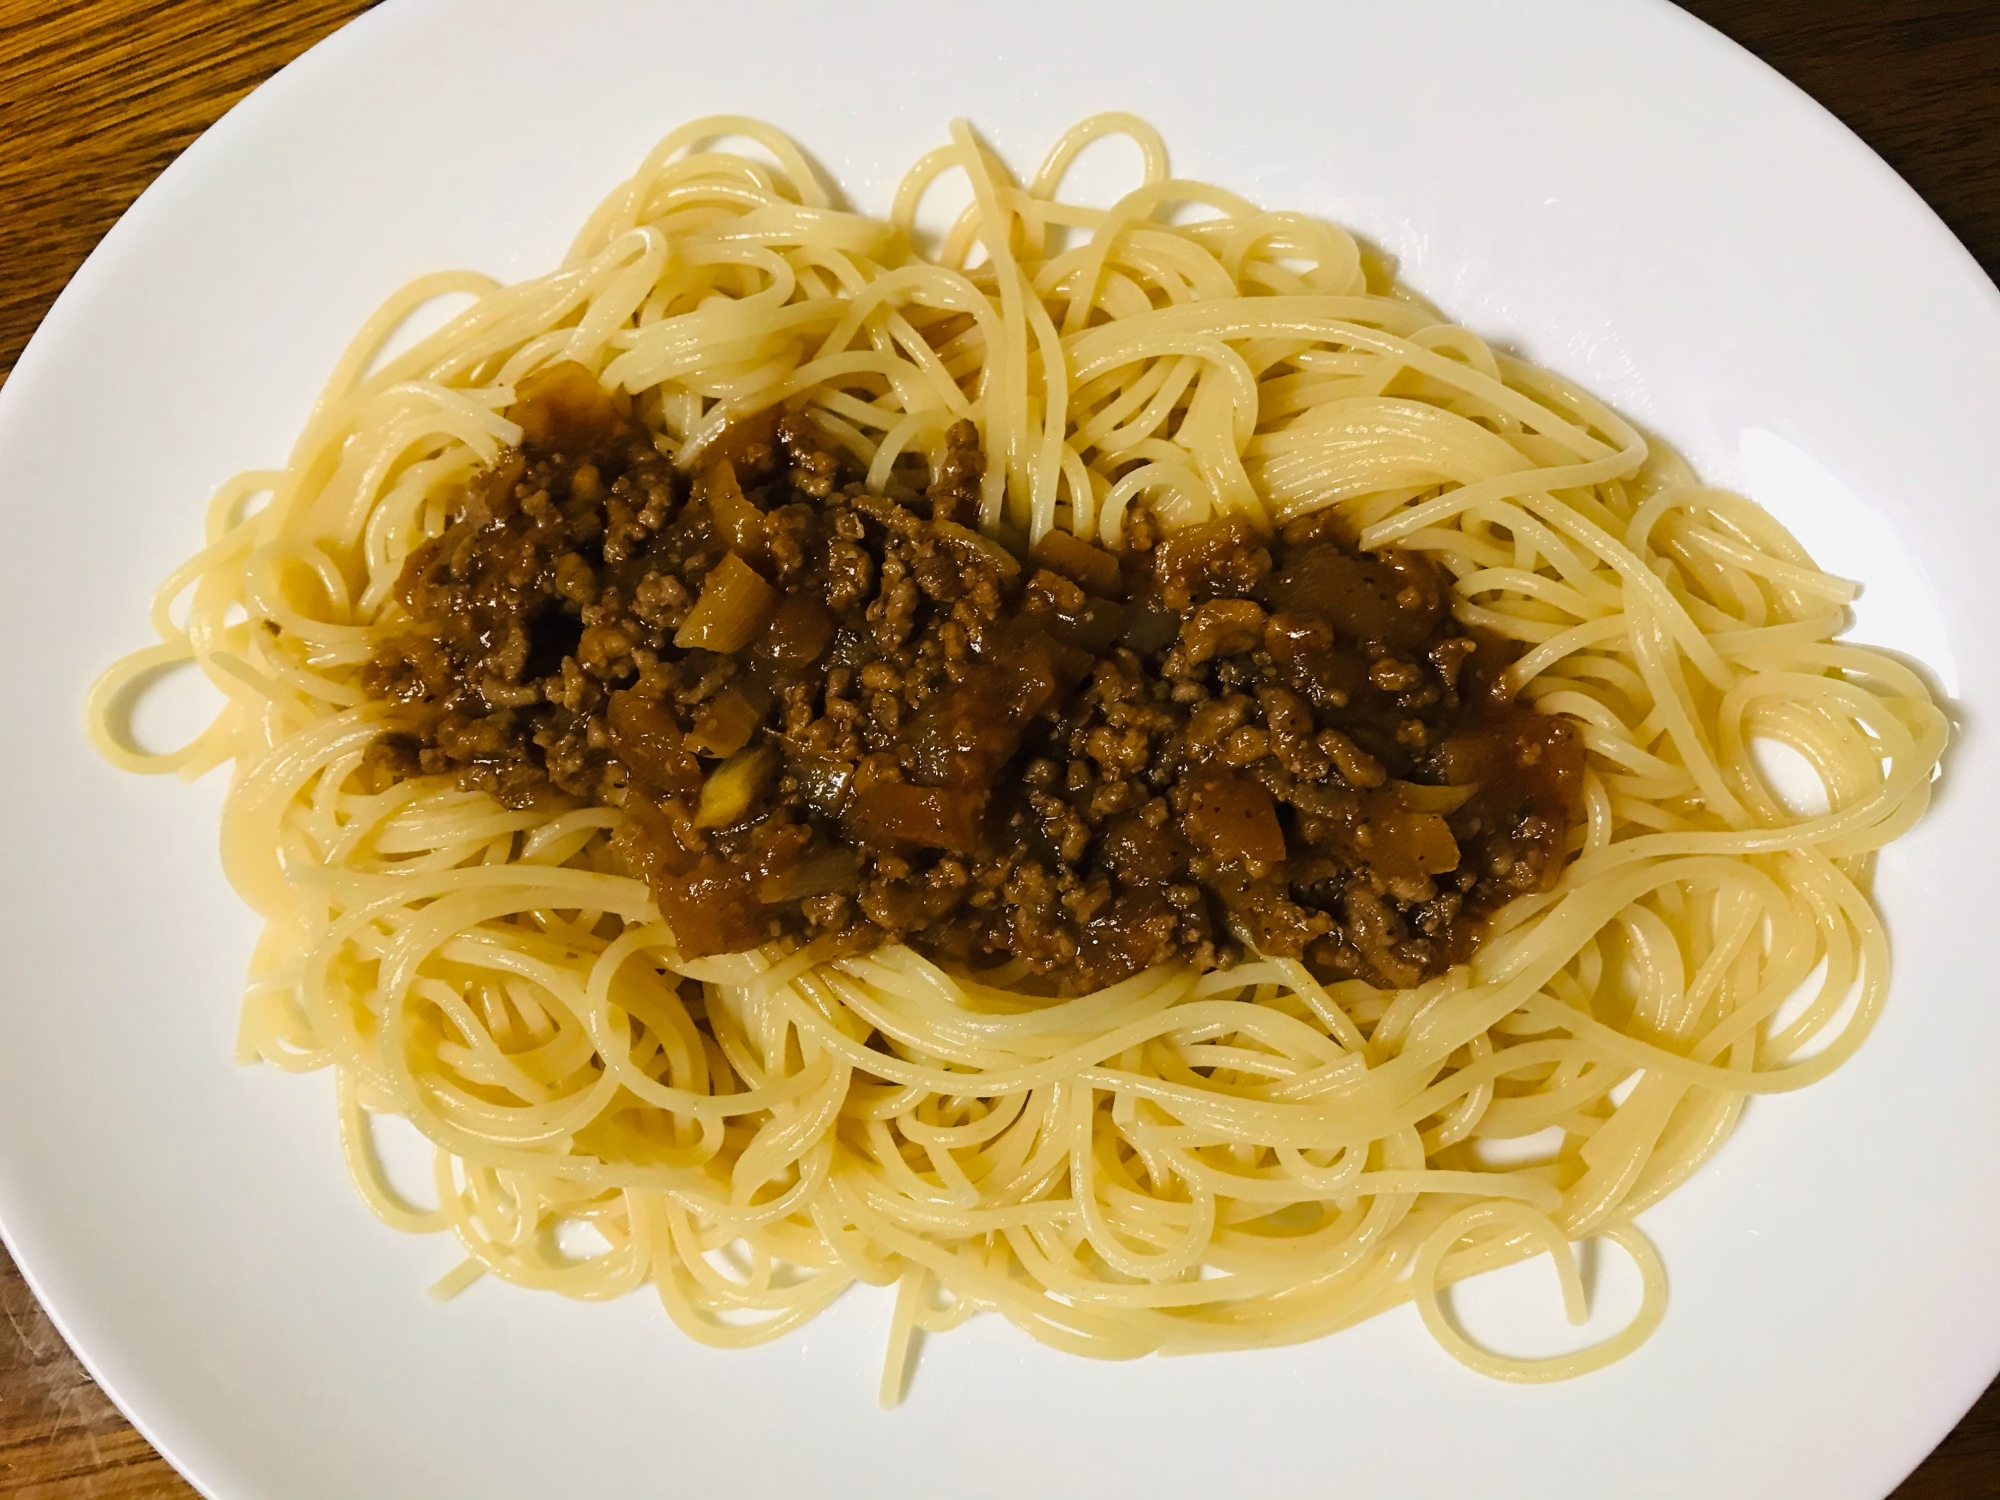 ミートスパゲティ